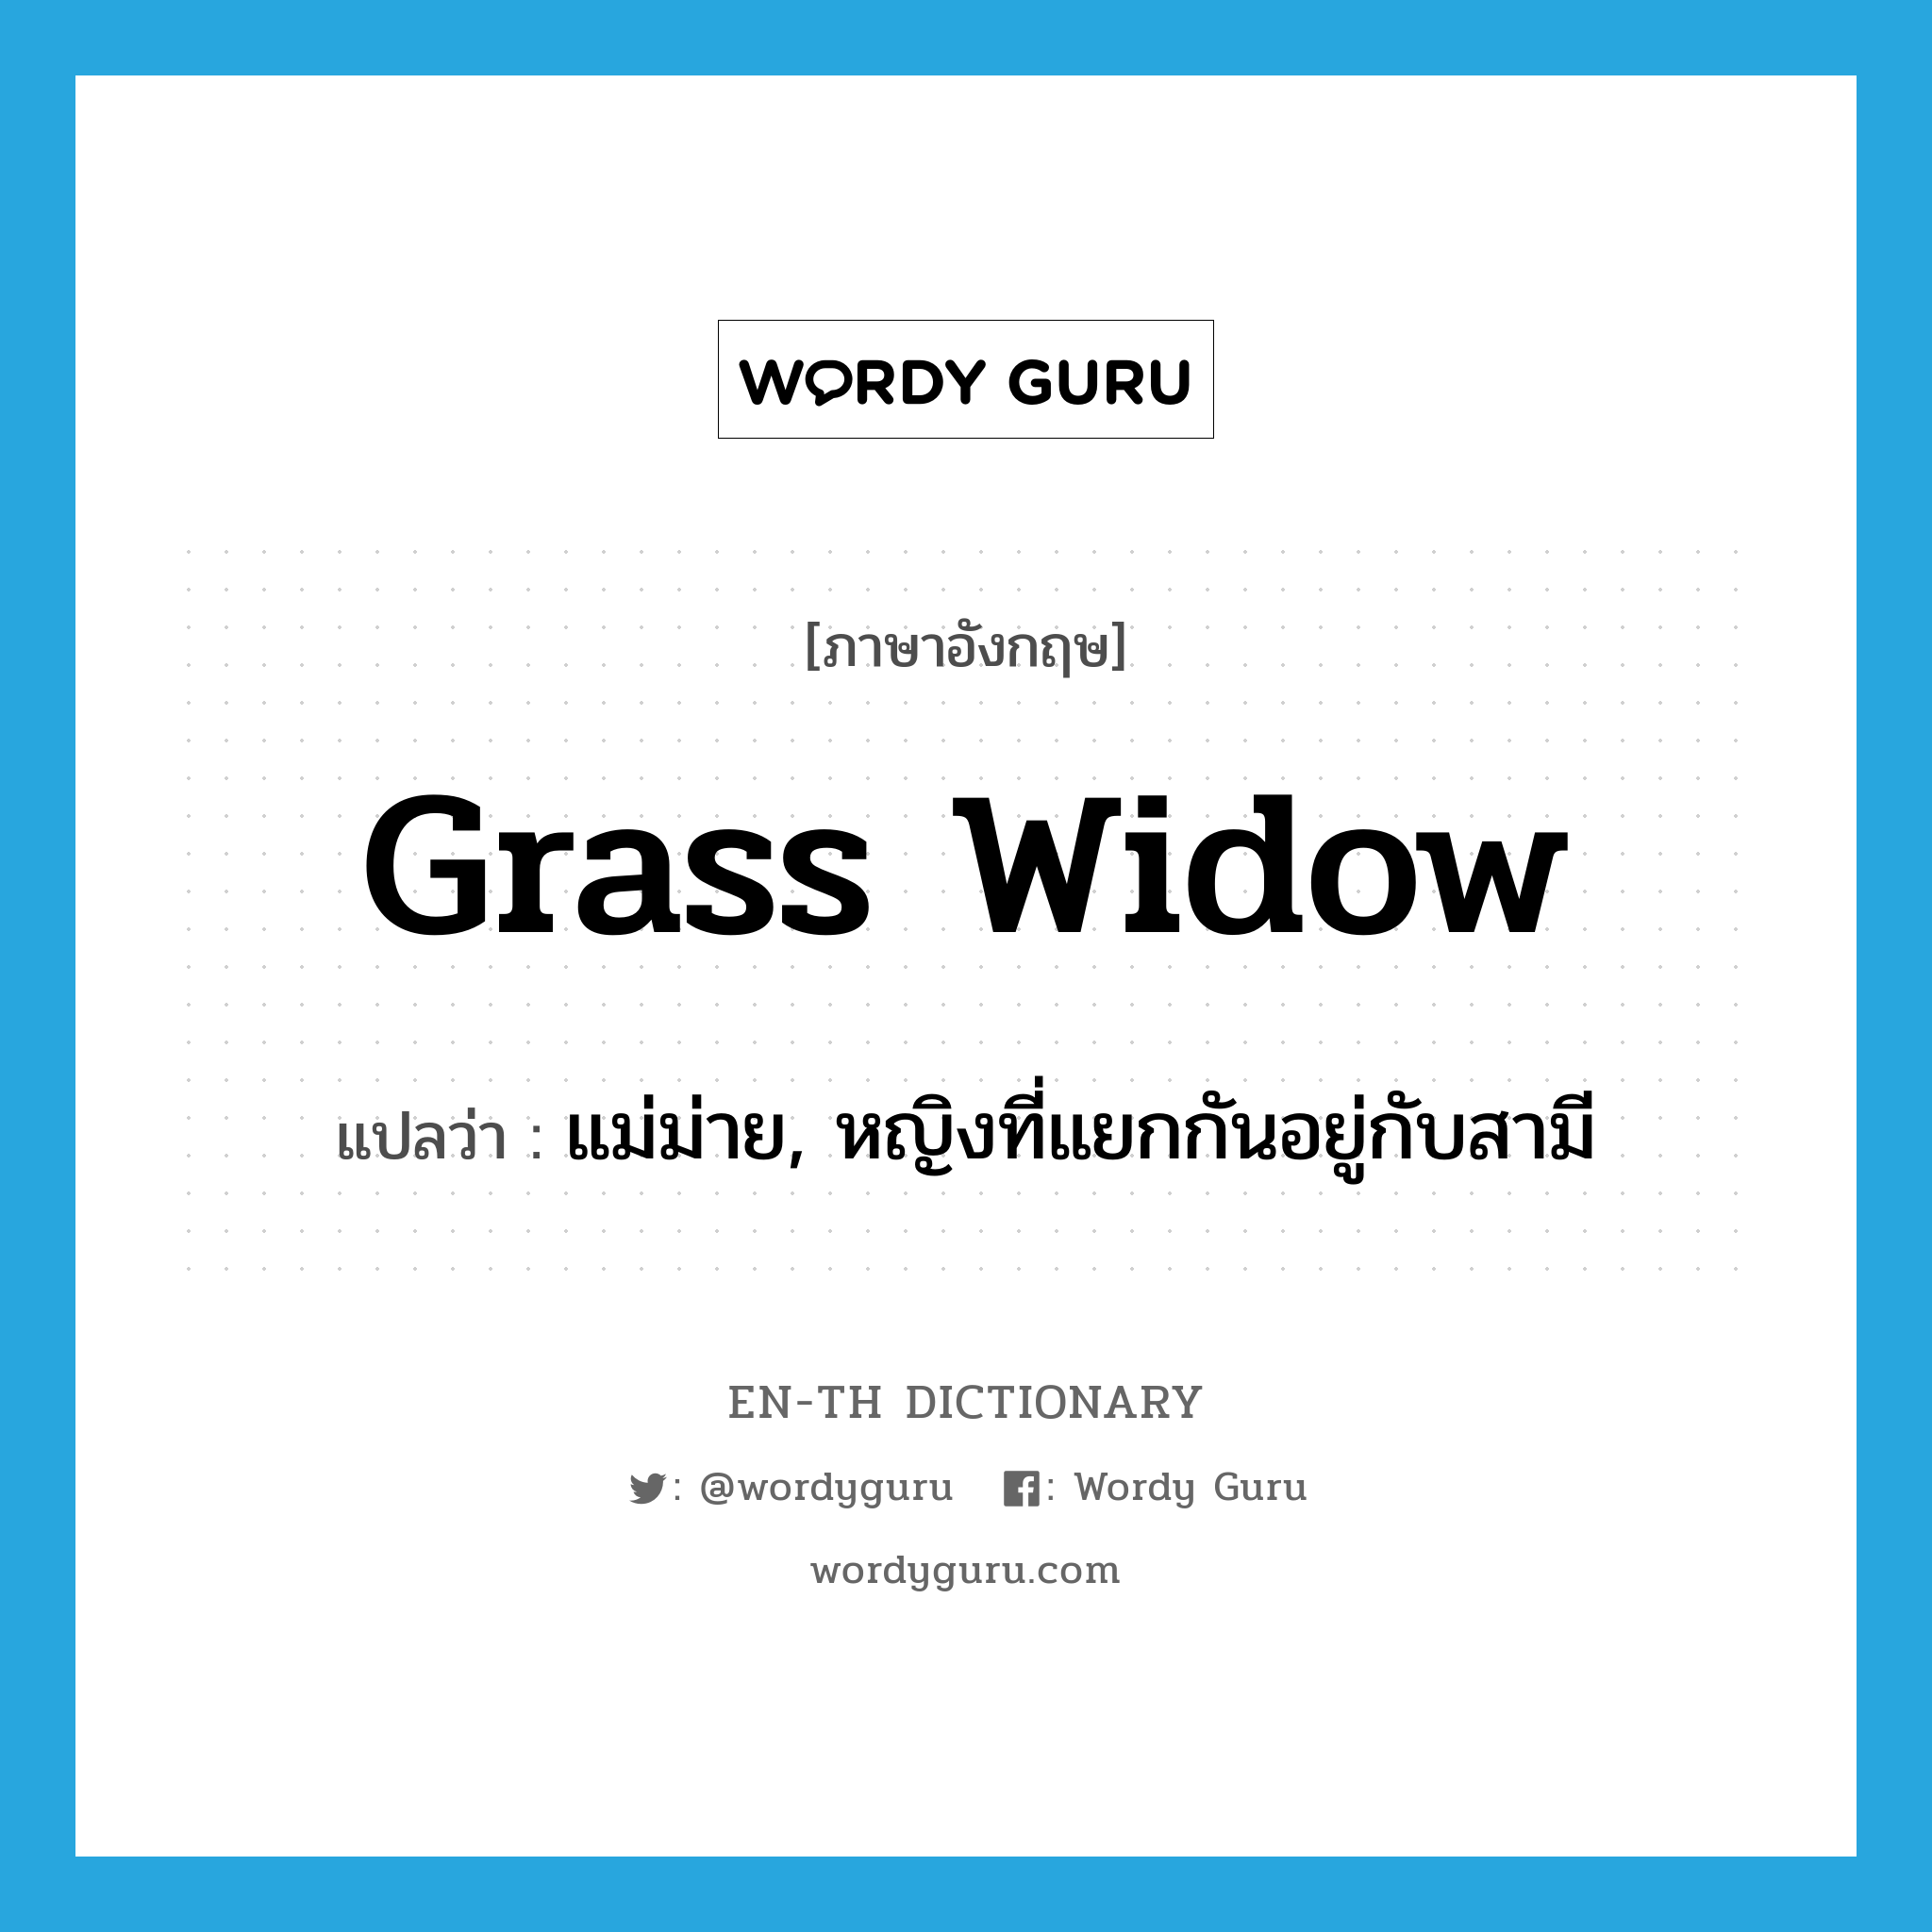 grass widow